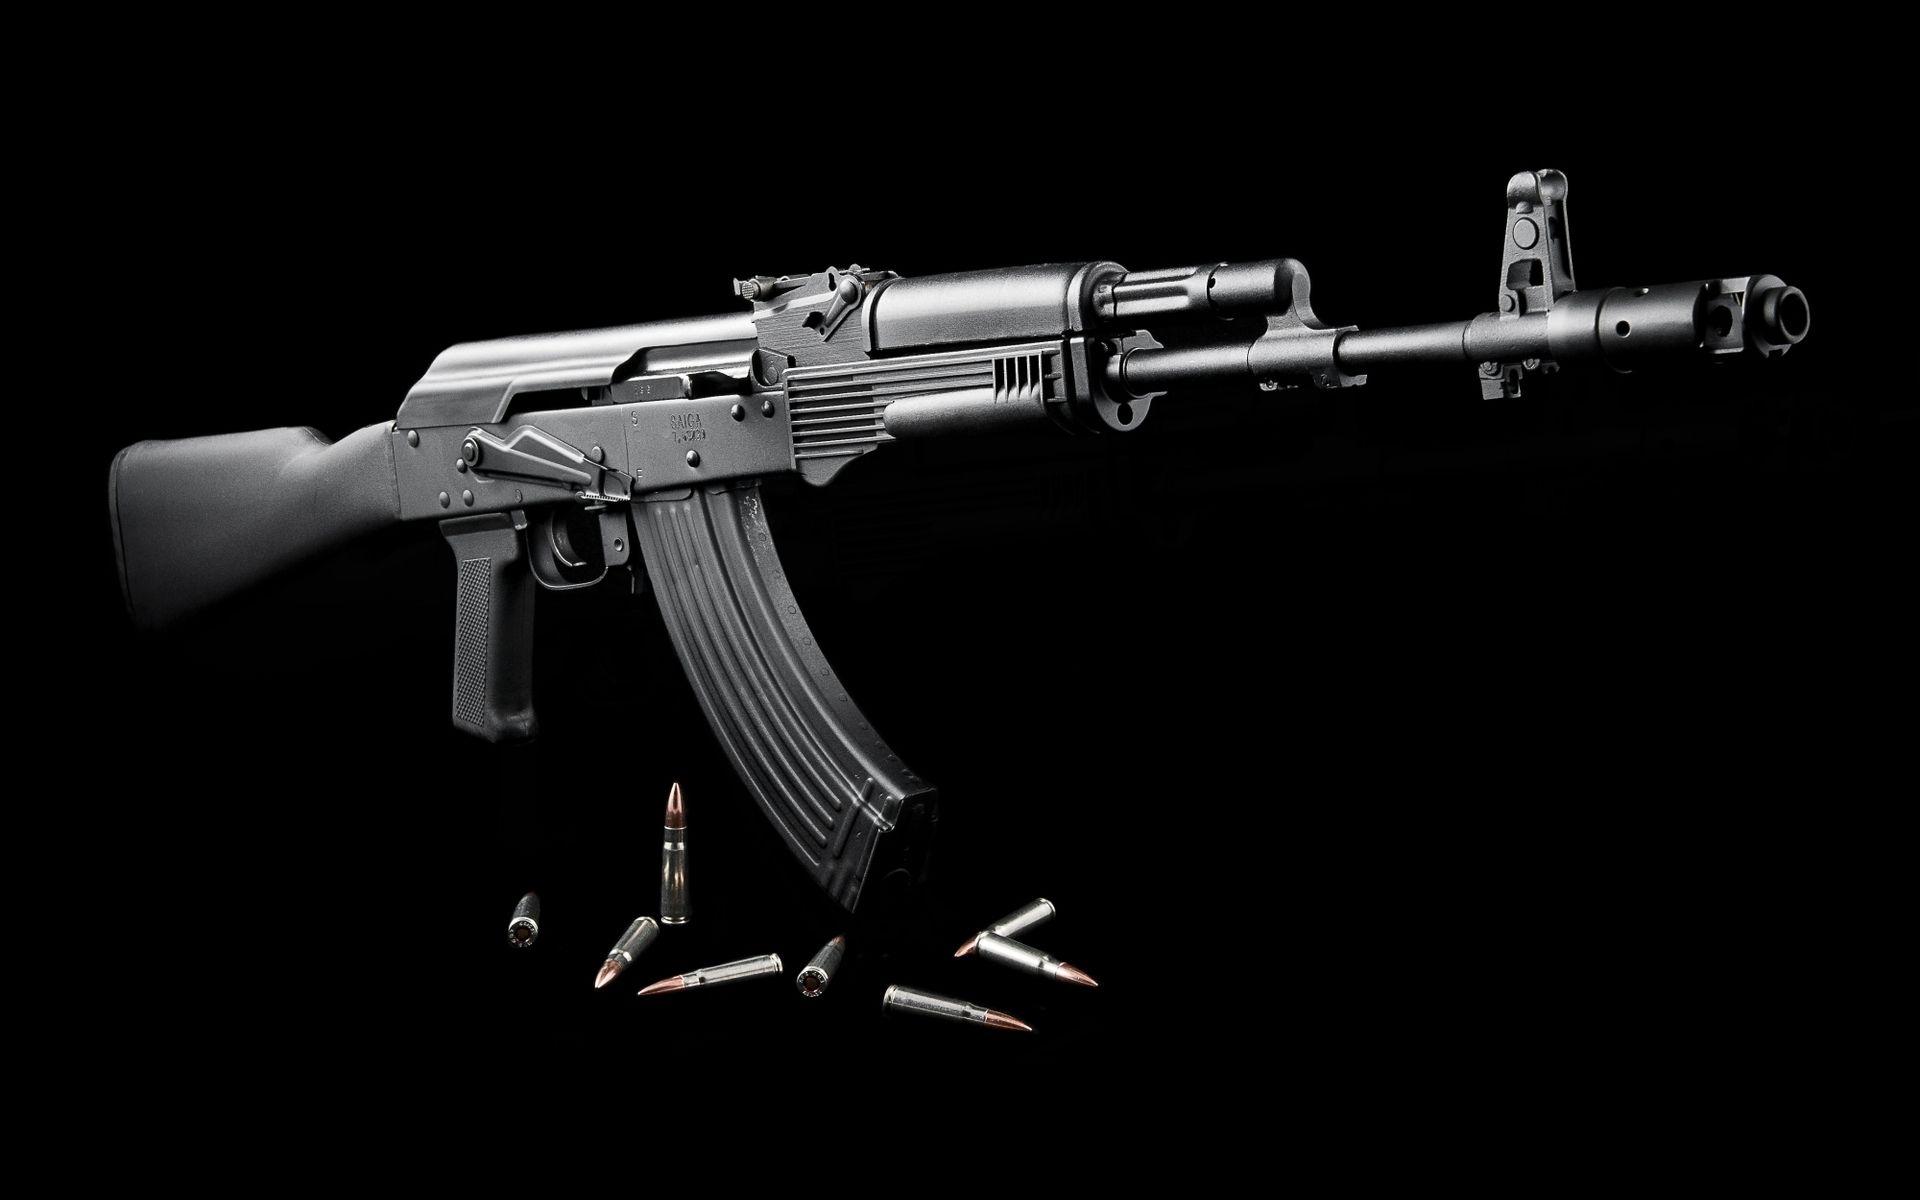 Download AK-47 Gun PNG Image for Free